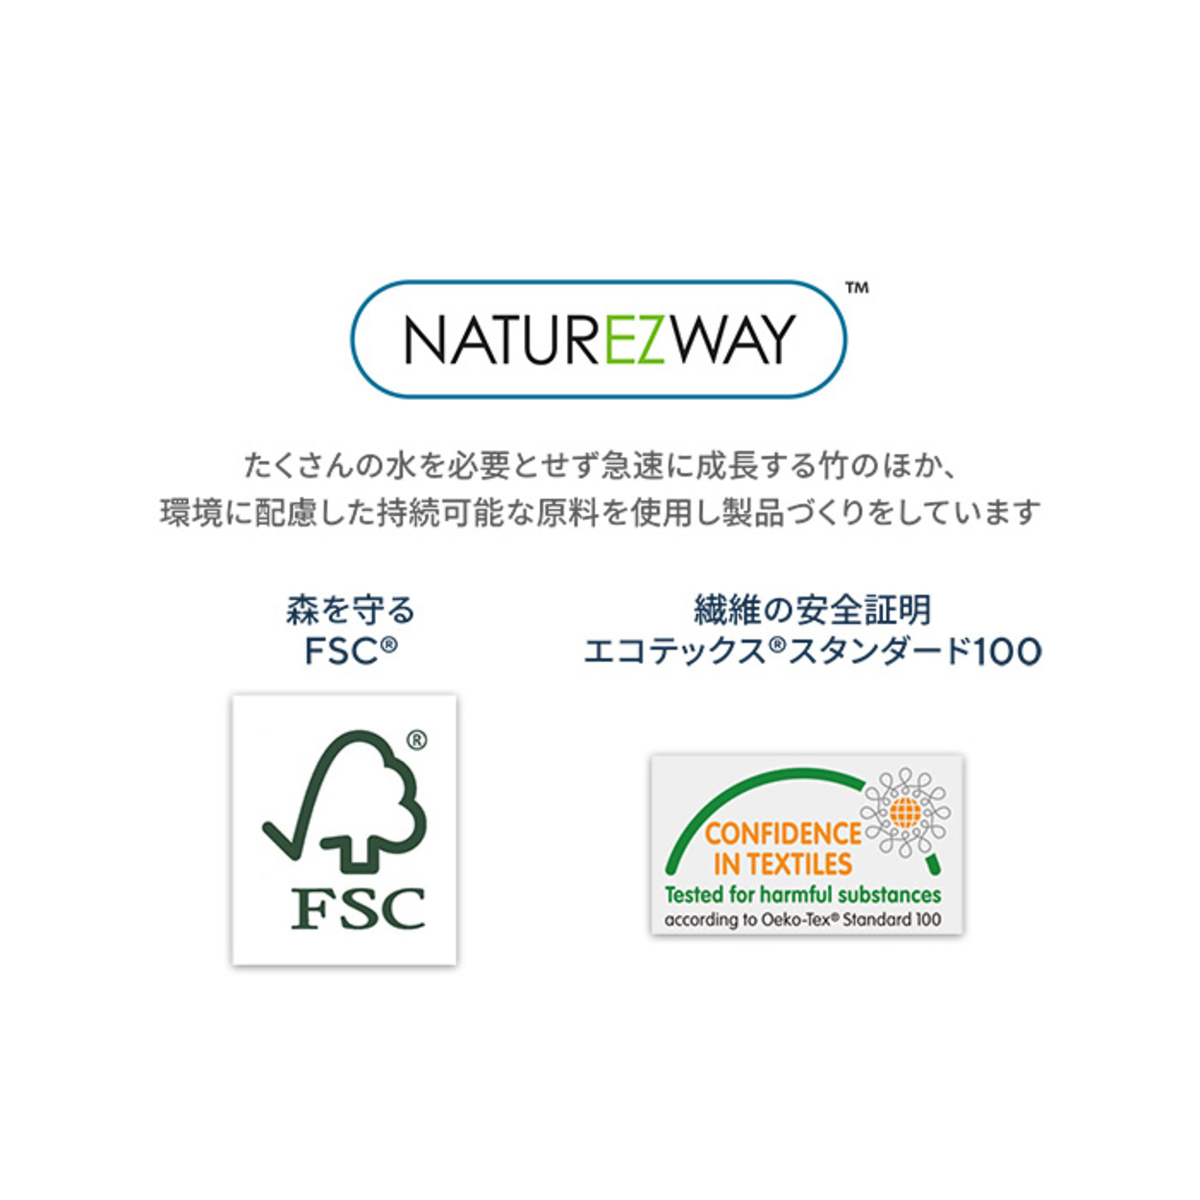 繰り返し洗って使える バンブータオル 8ロールセット ネイチャーズウェイ（naturezway） - QVC.jp